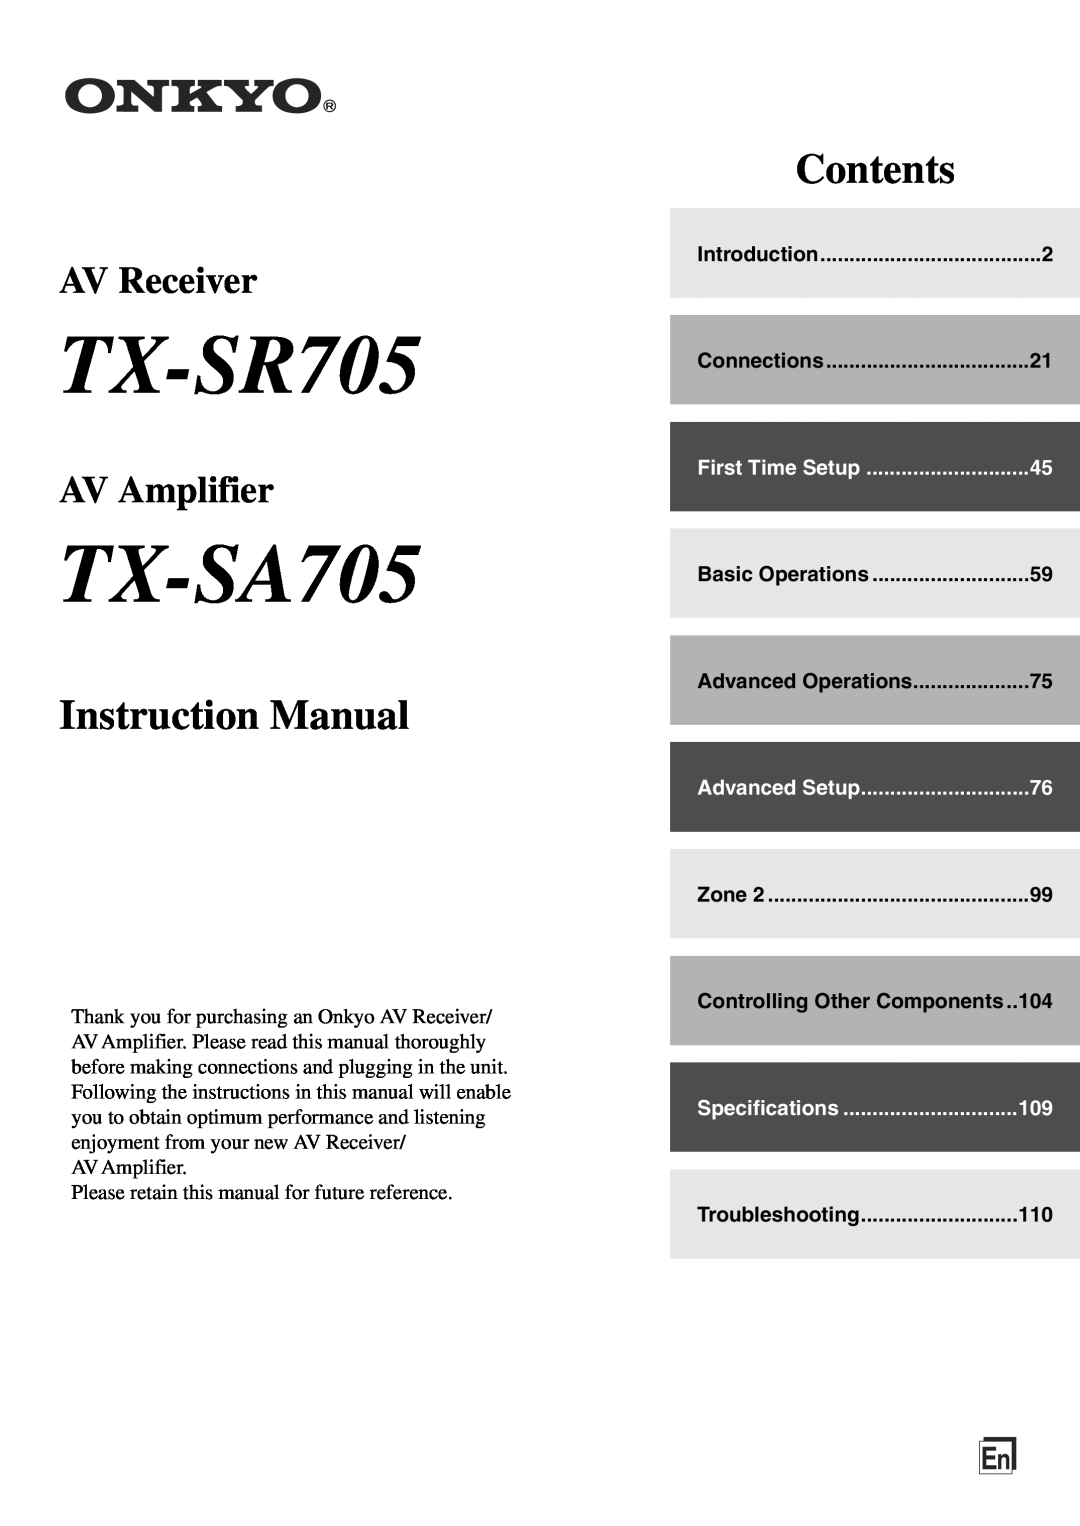 Onkyo TX-SA705 instruction manual TX-SR705, Instruction Manual, Contents, AV Receiver, AV Amplifier 